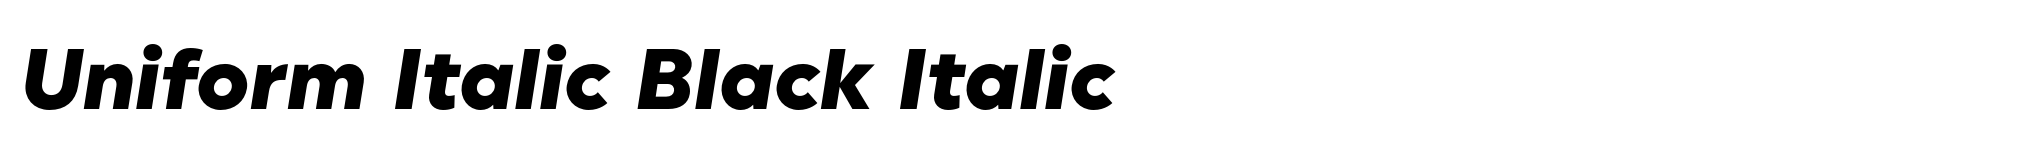 Uniform Italic Black Italic image